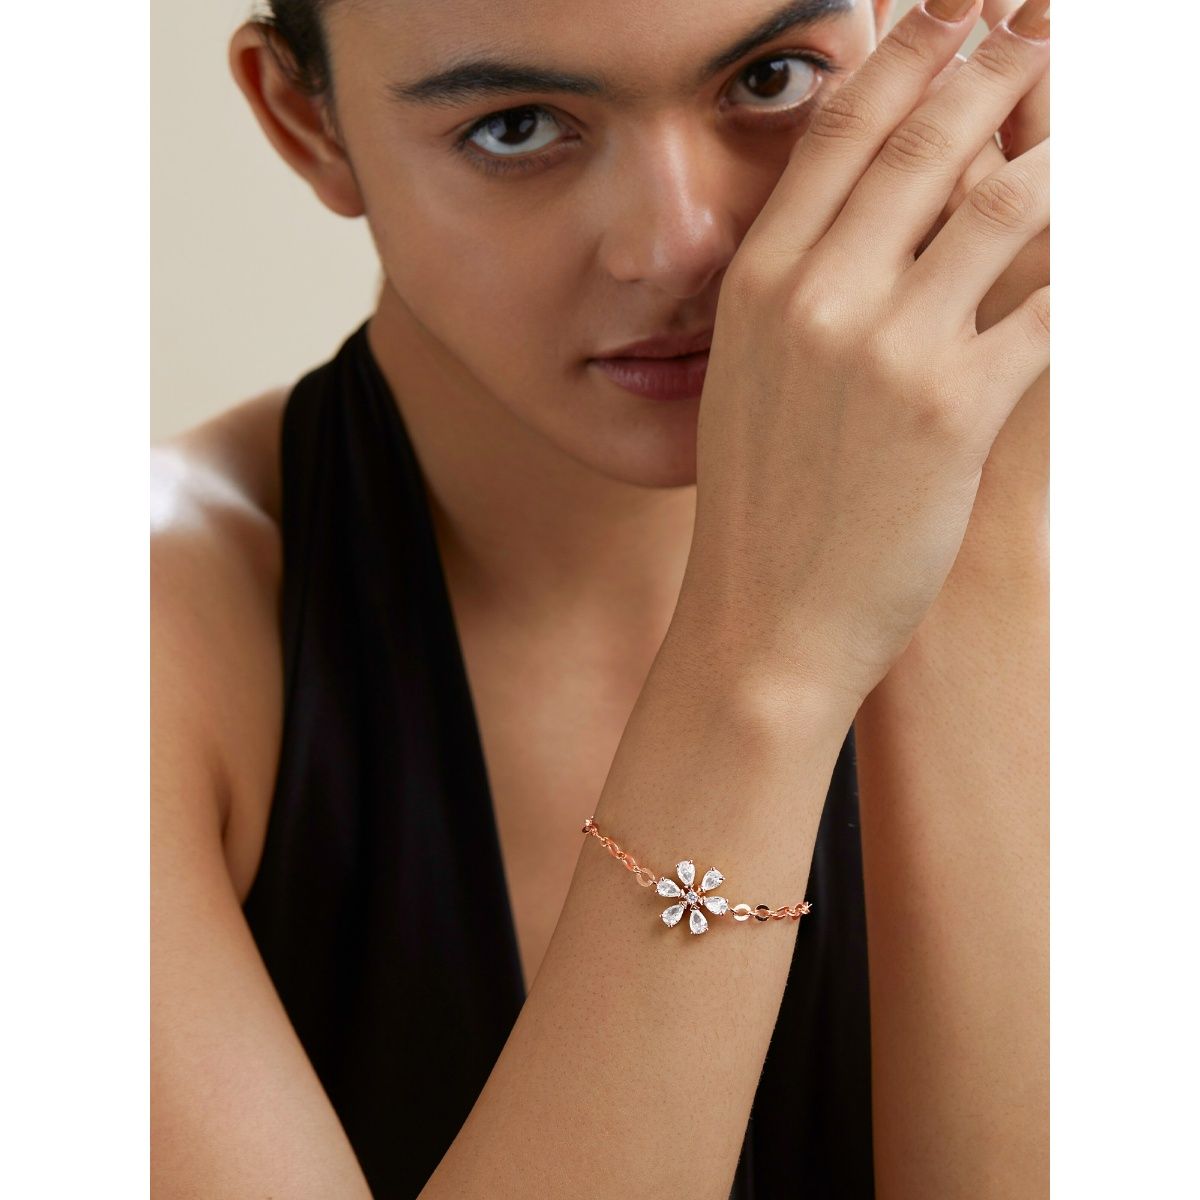 Buy Rose Gold Bracelets  Bangles for Women by Vanbelle Online  Ajiocom